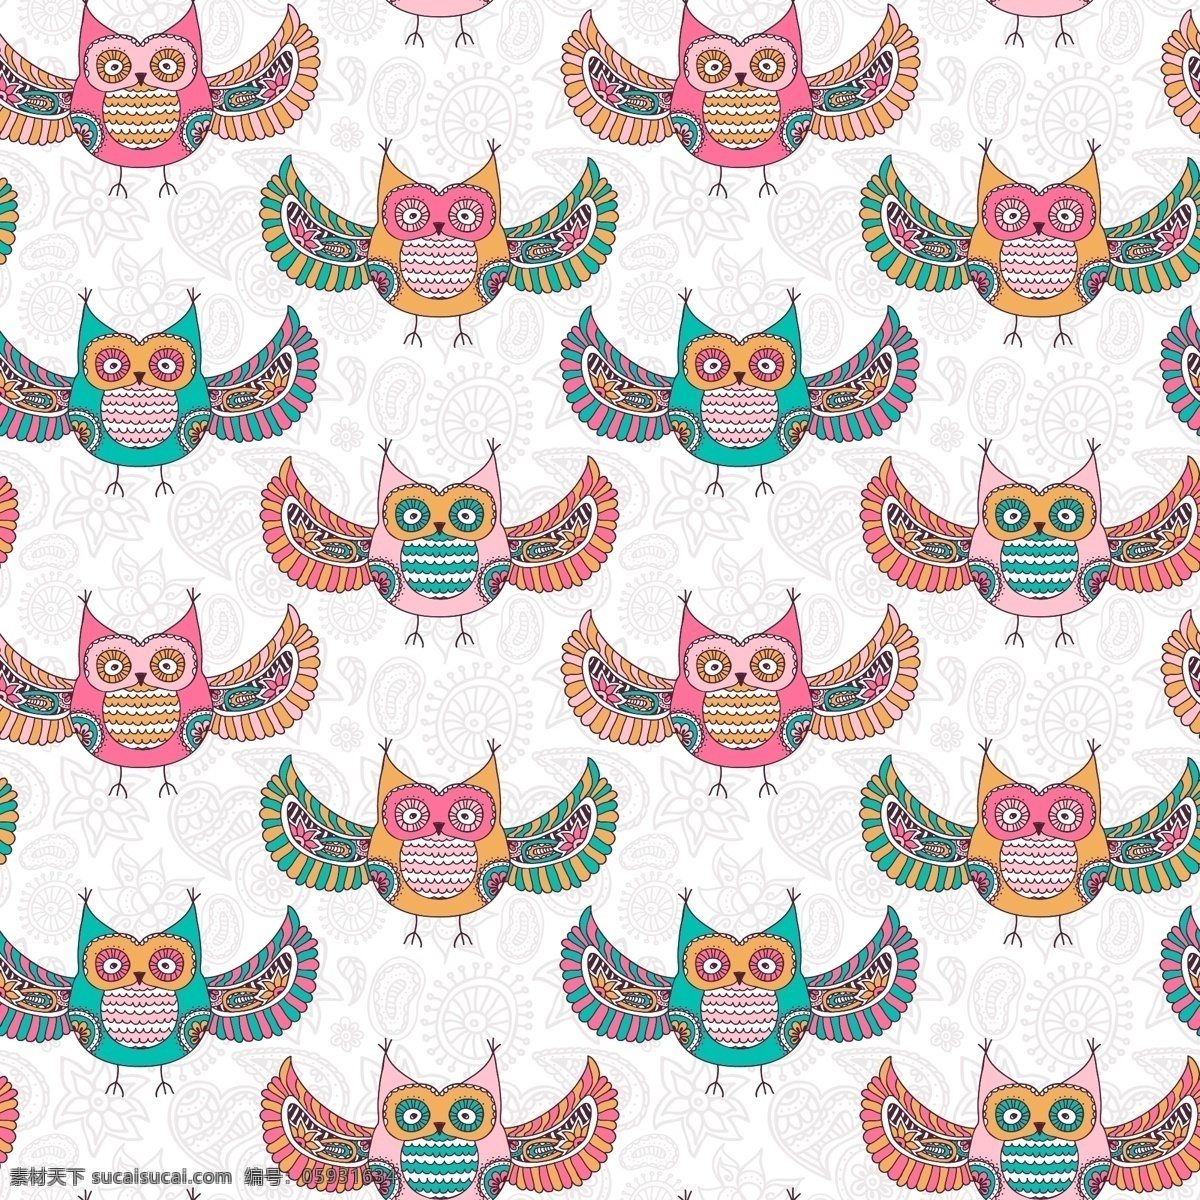 彩色 猫头鹰 图案 背景 动物 颜色 墙纸 无缝